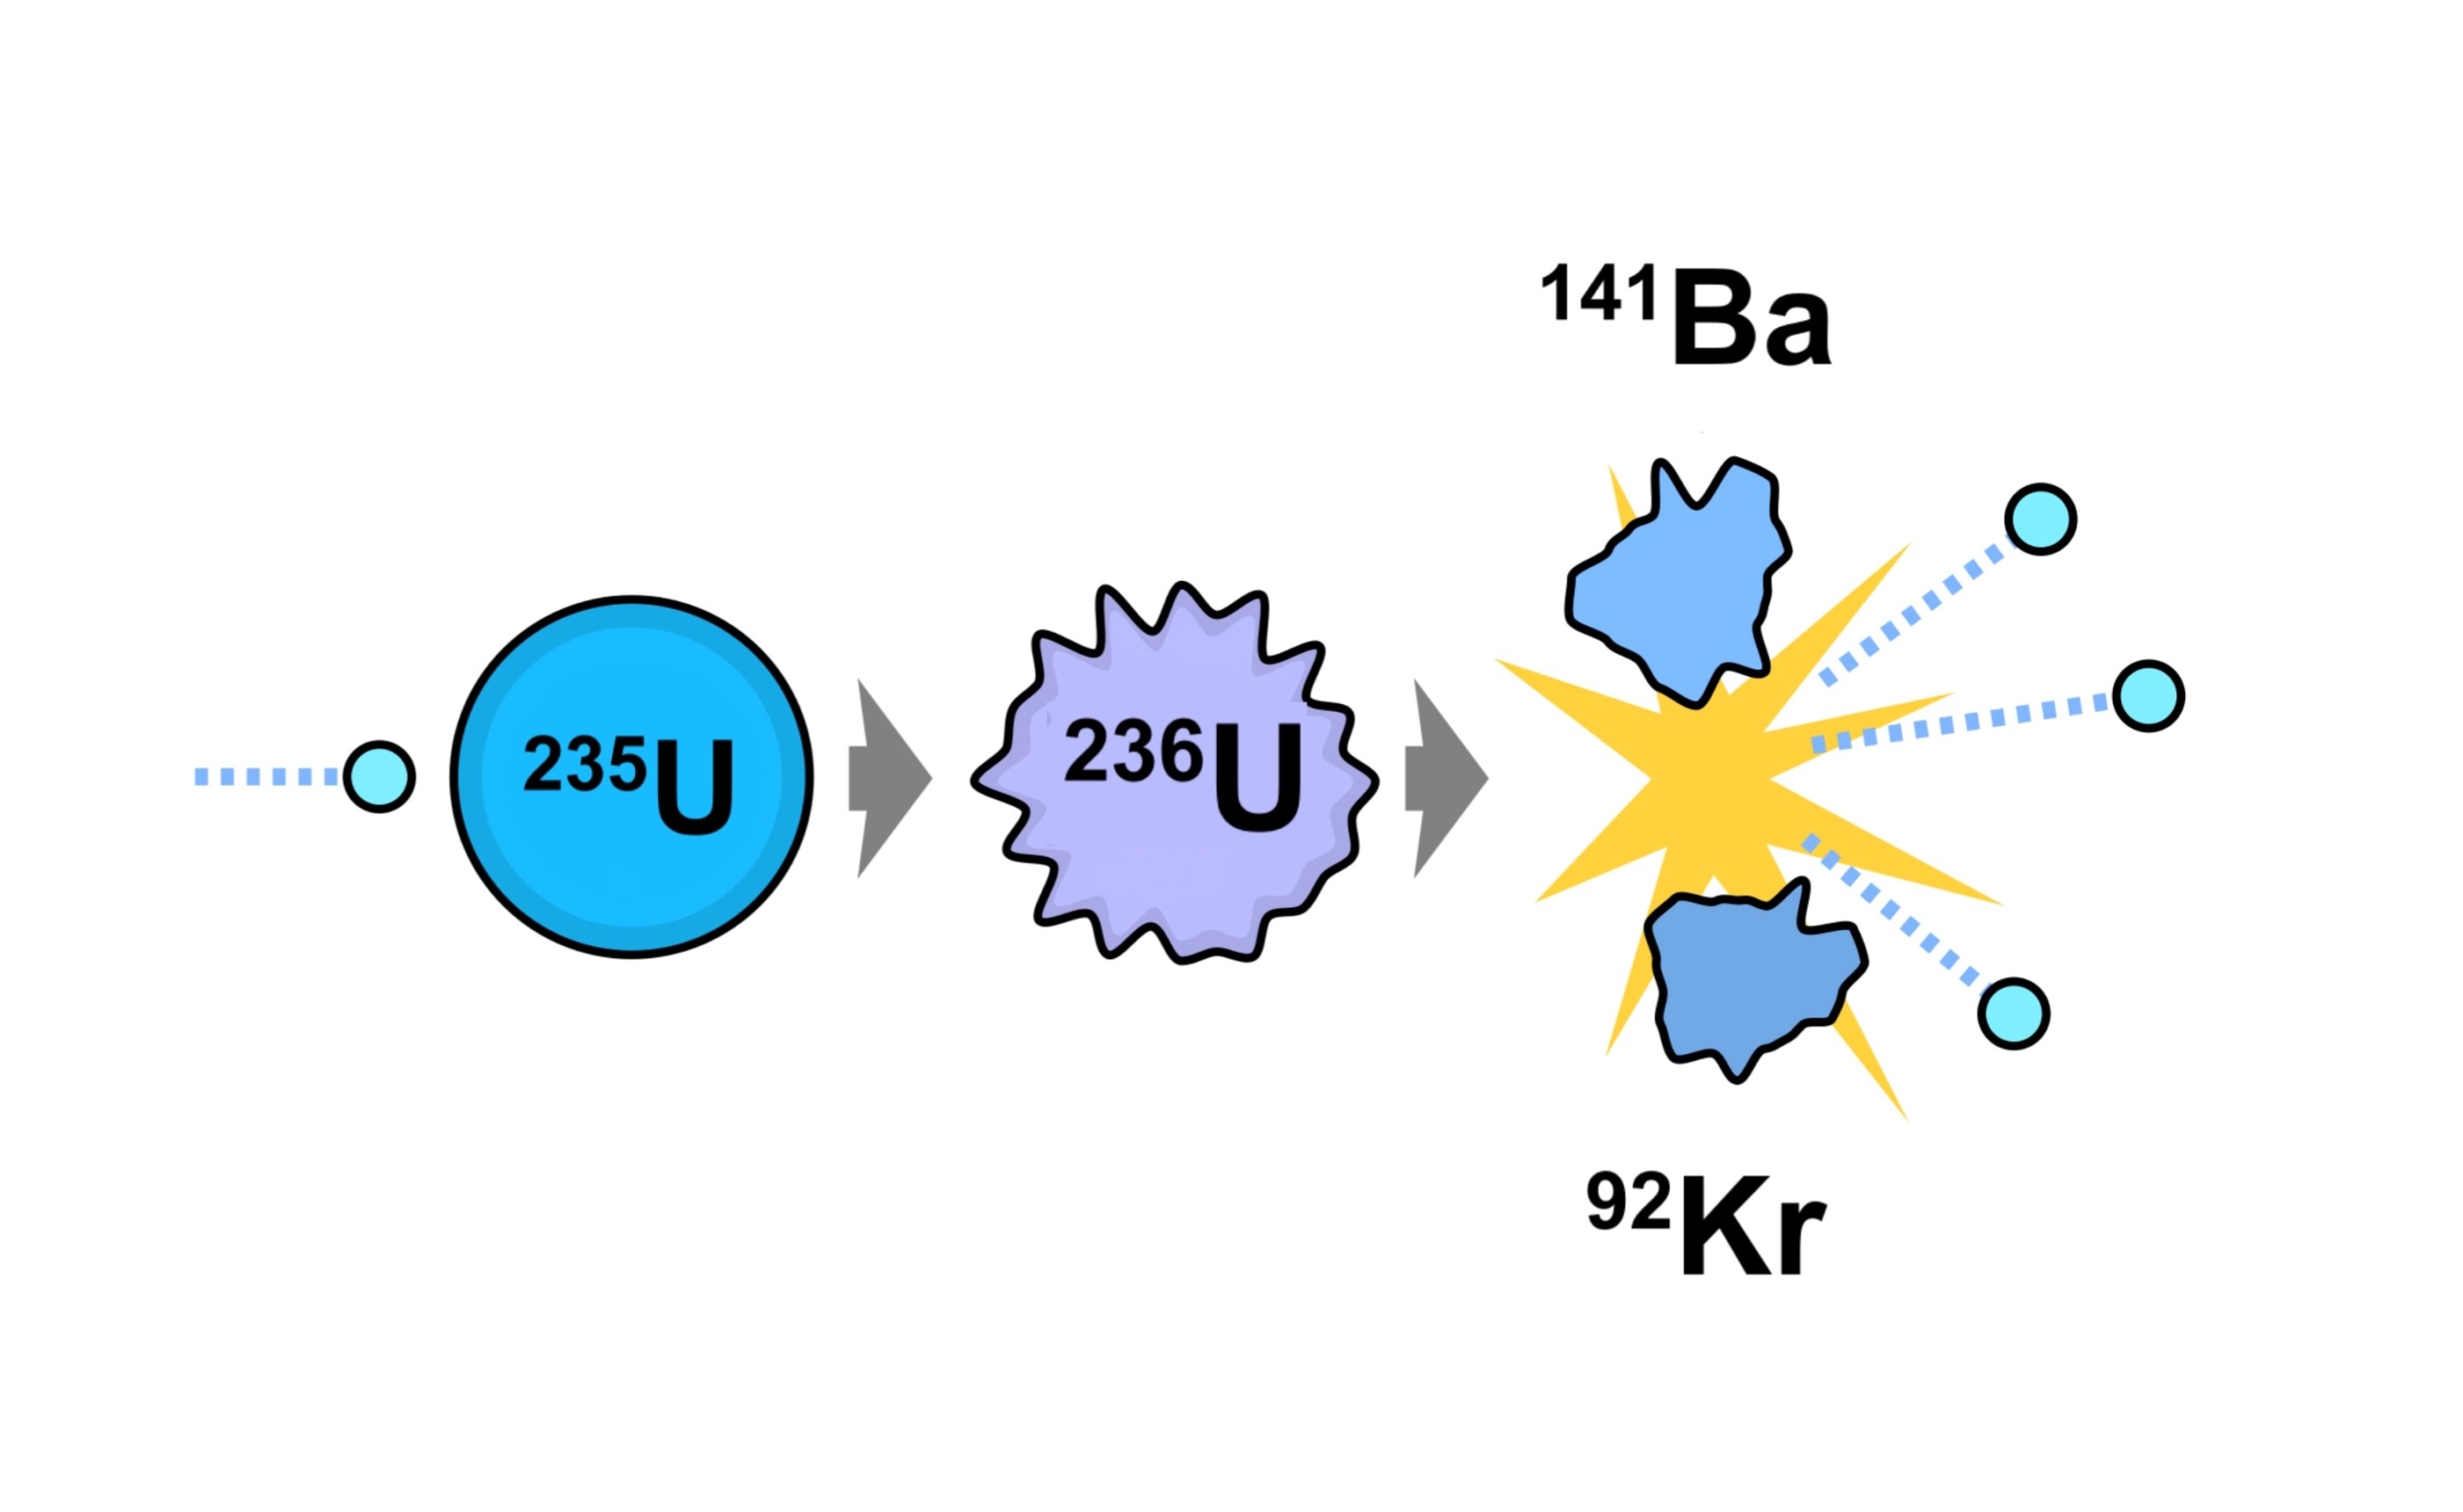 Verižna reakcija Uran-235, ki vodi do [-] jedrske cepitvene bombe, hkrati pa proizvaja energijo v jedrskem reaktorju, se kot prvi korak napaja z absorpcijo nevtronov, kar povzroči proizvodnjo treh dodatnih prostih nevtronov. E. SIEGEL, FASTFISSION / WIKIMEDIA SKUPNO